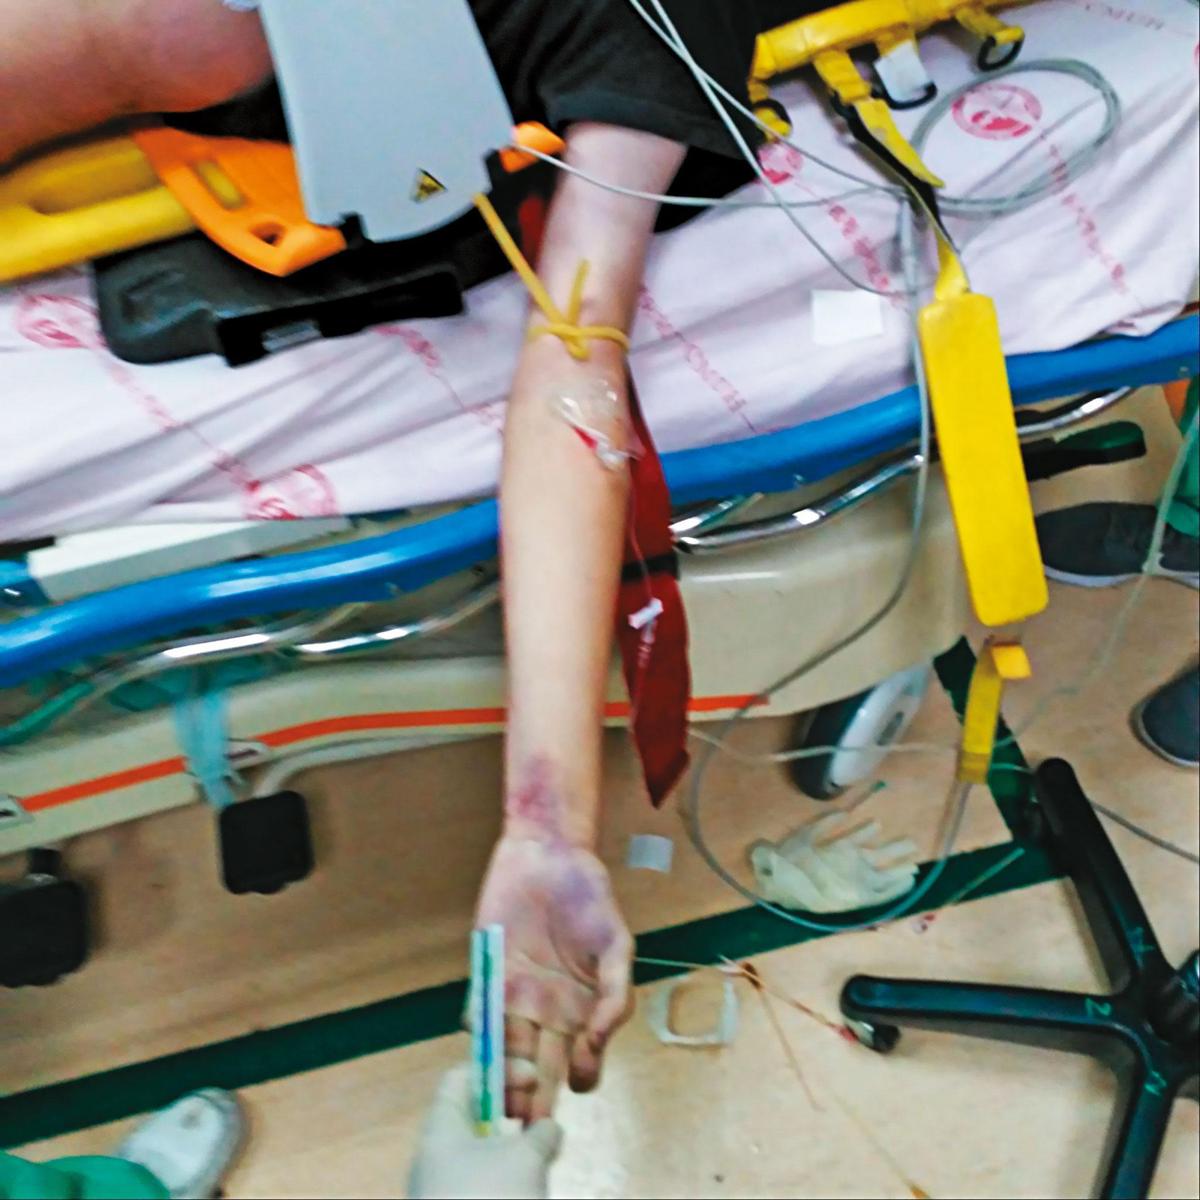 賴男在救護車內使用心肺復甦機急救，送抵醫院後緊急插針，專案小組認為賴男手部針孔是醫護急救所致。（家屬提供）